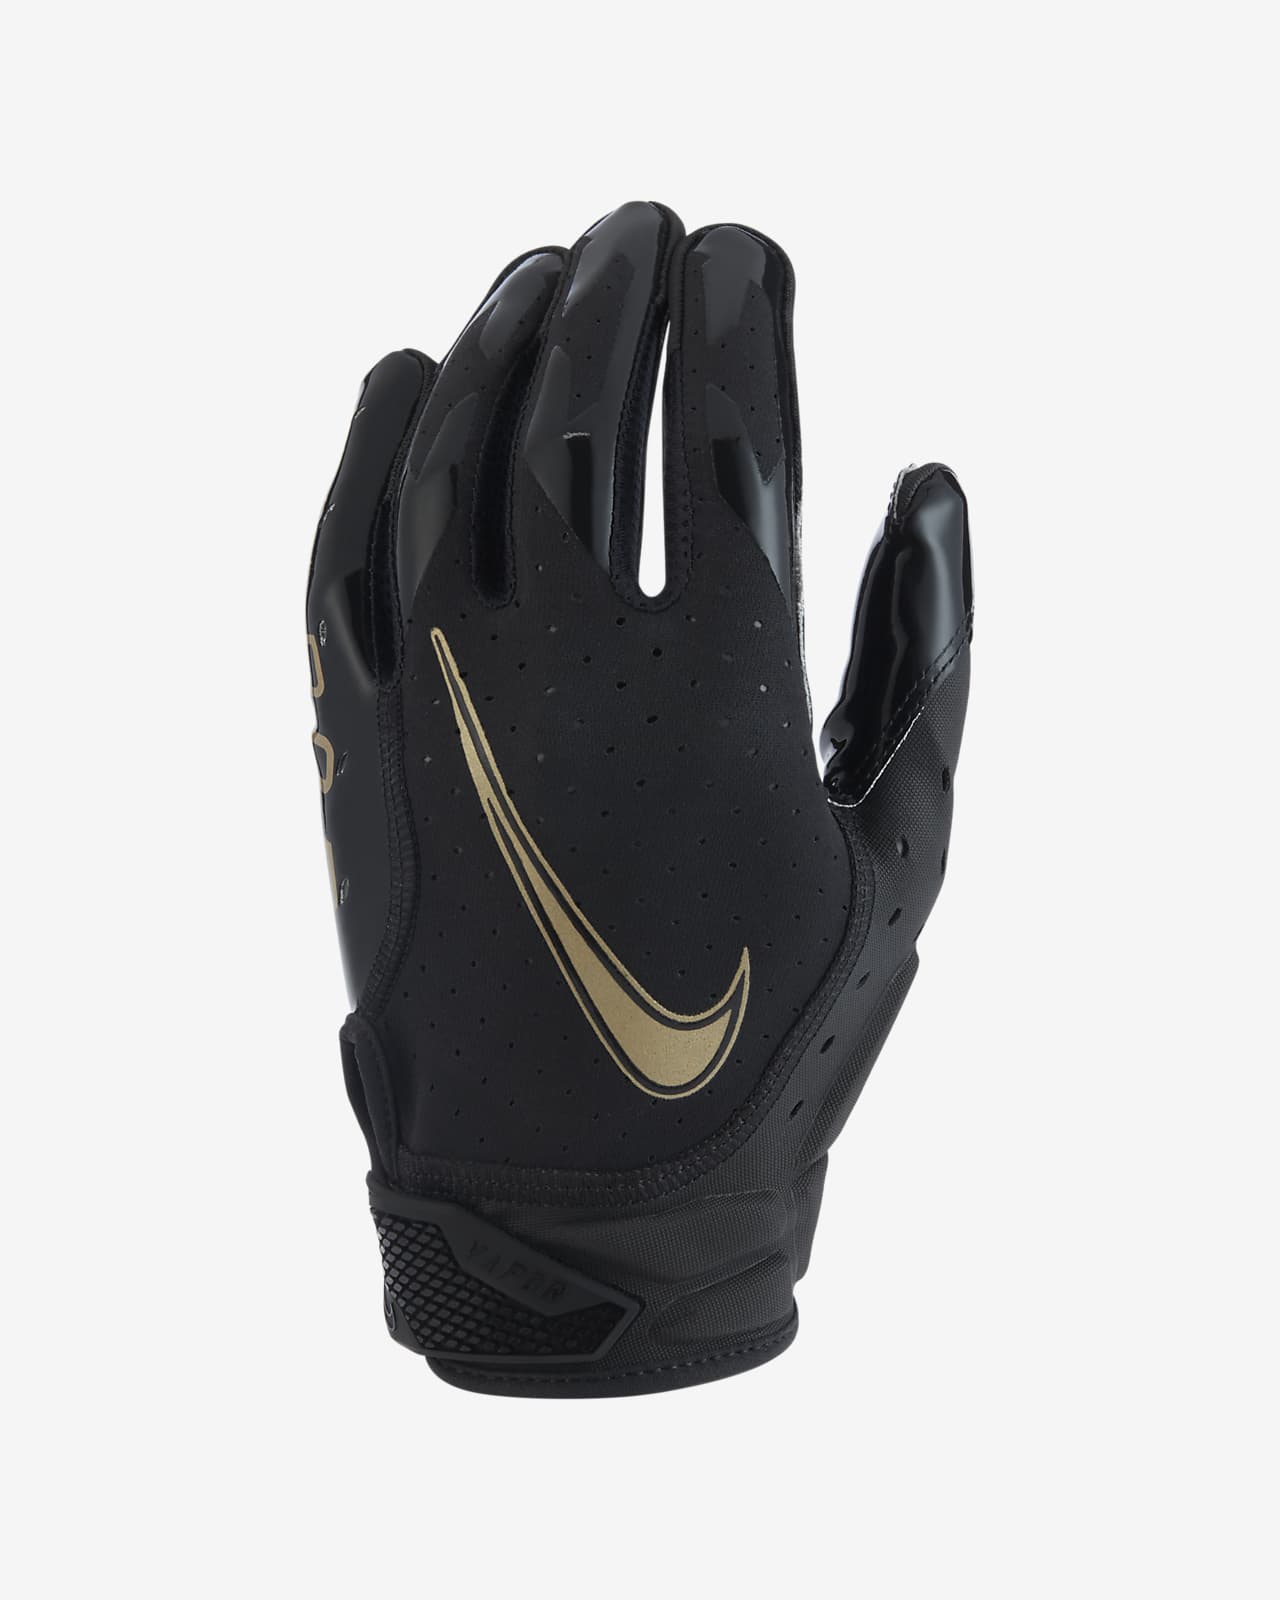 nike 6.0 football gloves